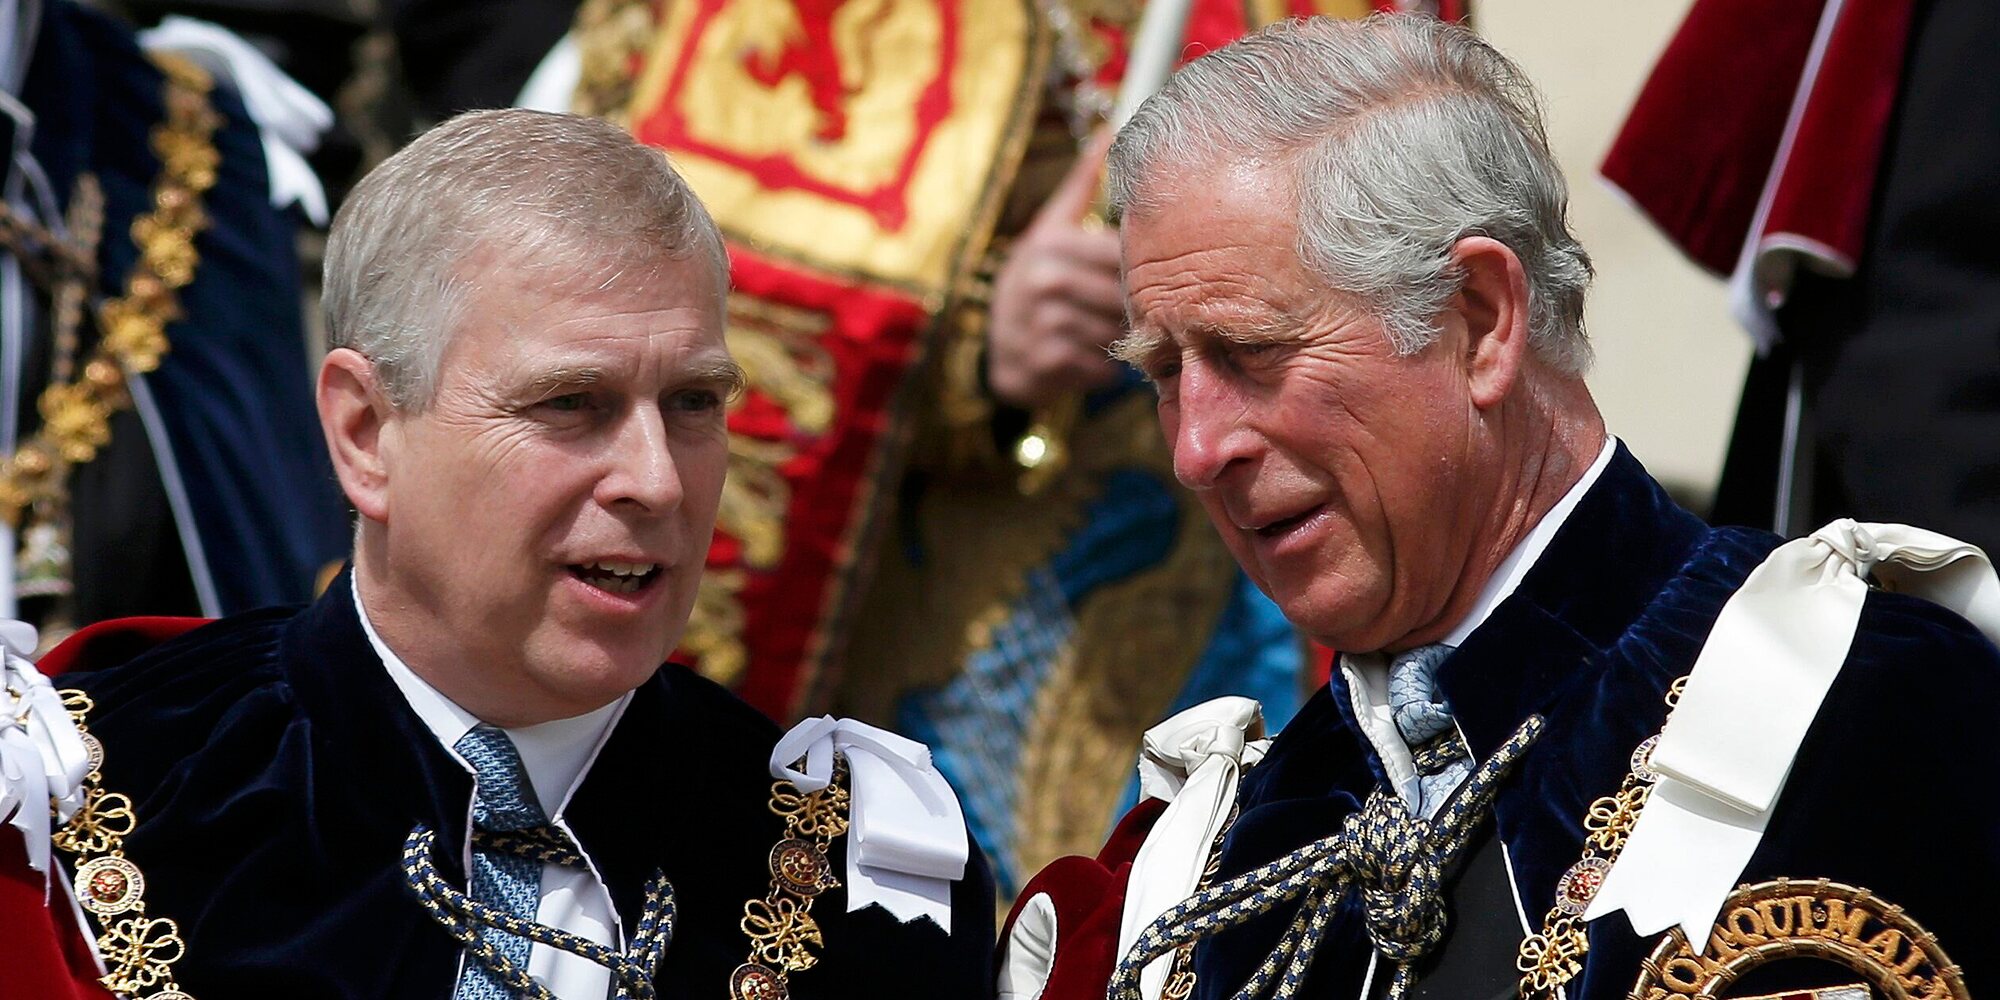 El Príncipe Carlos y el Príncipe Guillermo presionan al Príncipe Andrés para cerrar un acuerdo extrajudicial